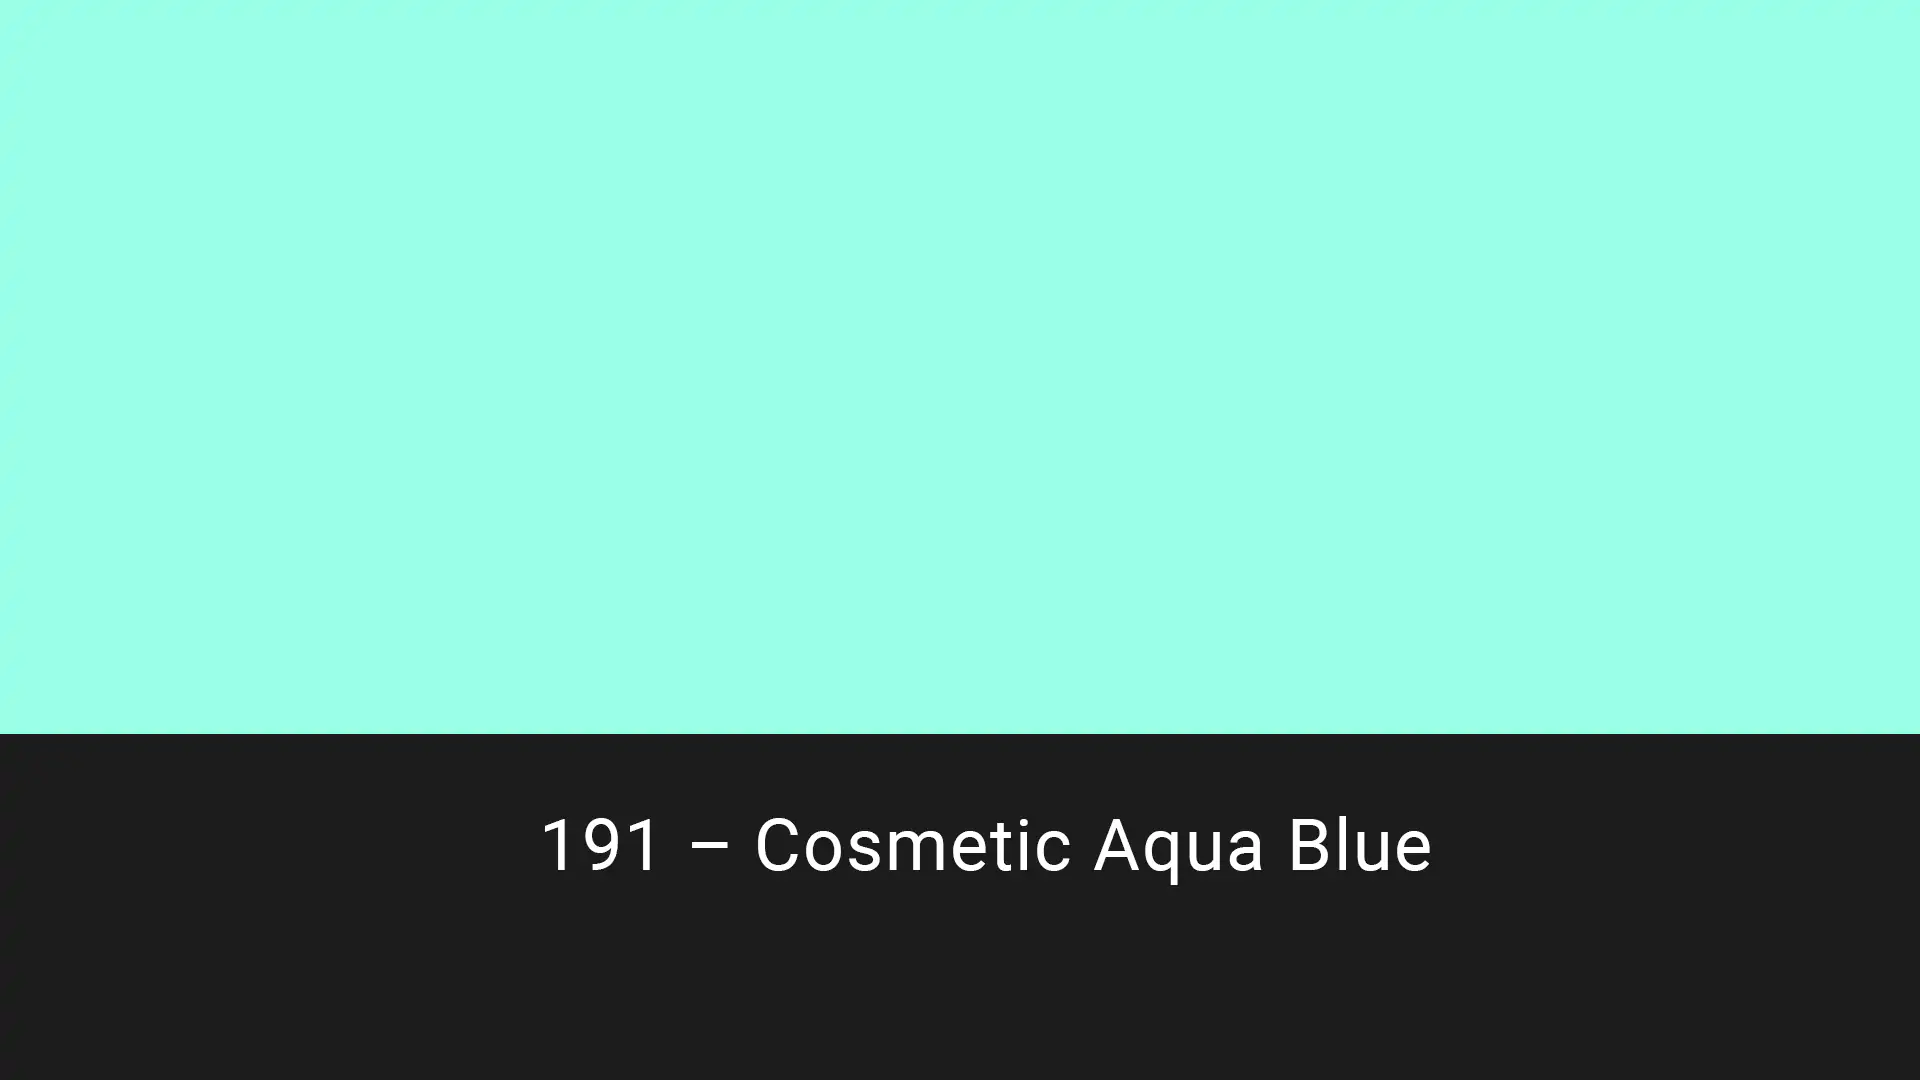 Cotech filters 191 Cosmetic Aqua Blue